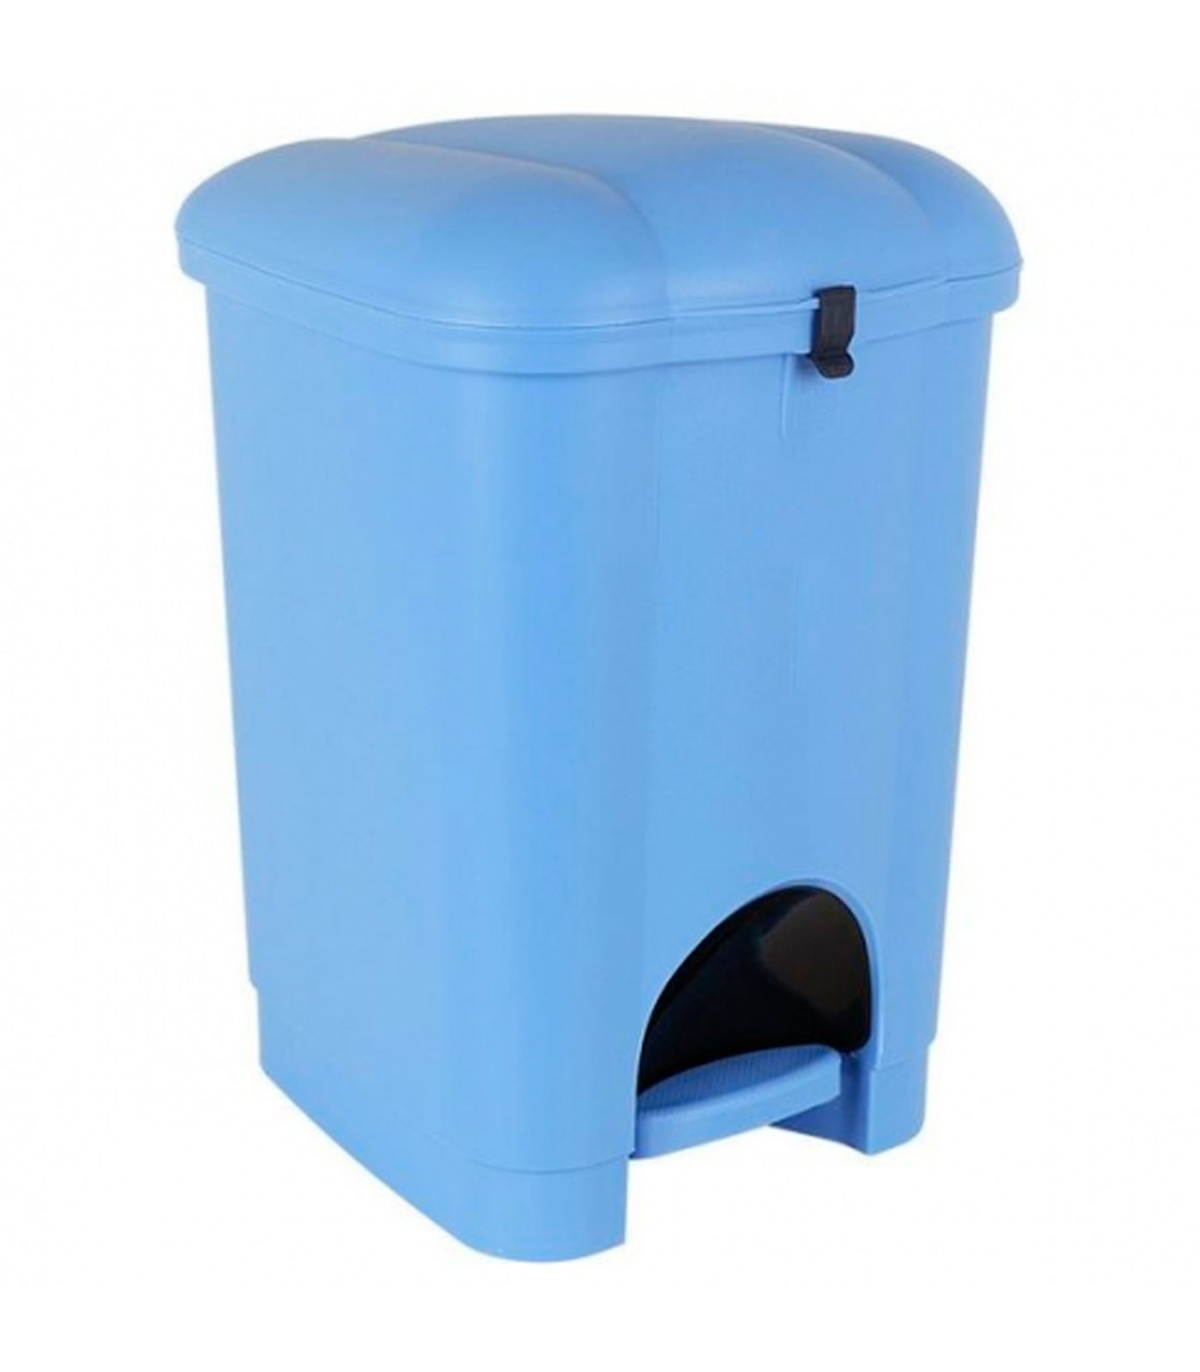 Tradineur - Cubo de basura con pedal y recipiente interior